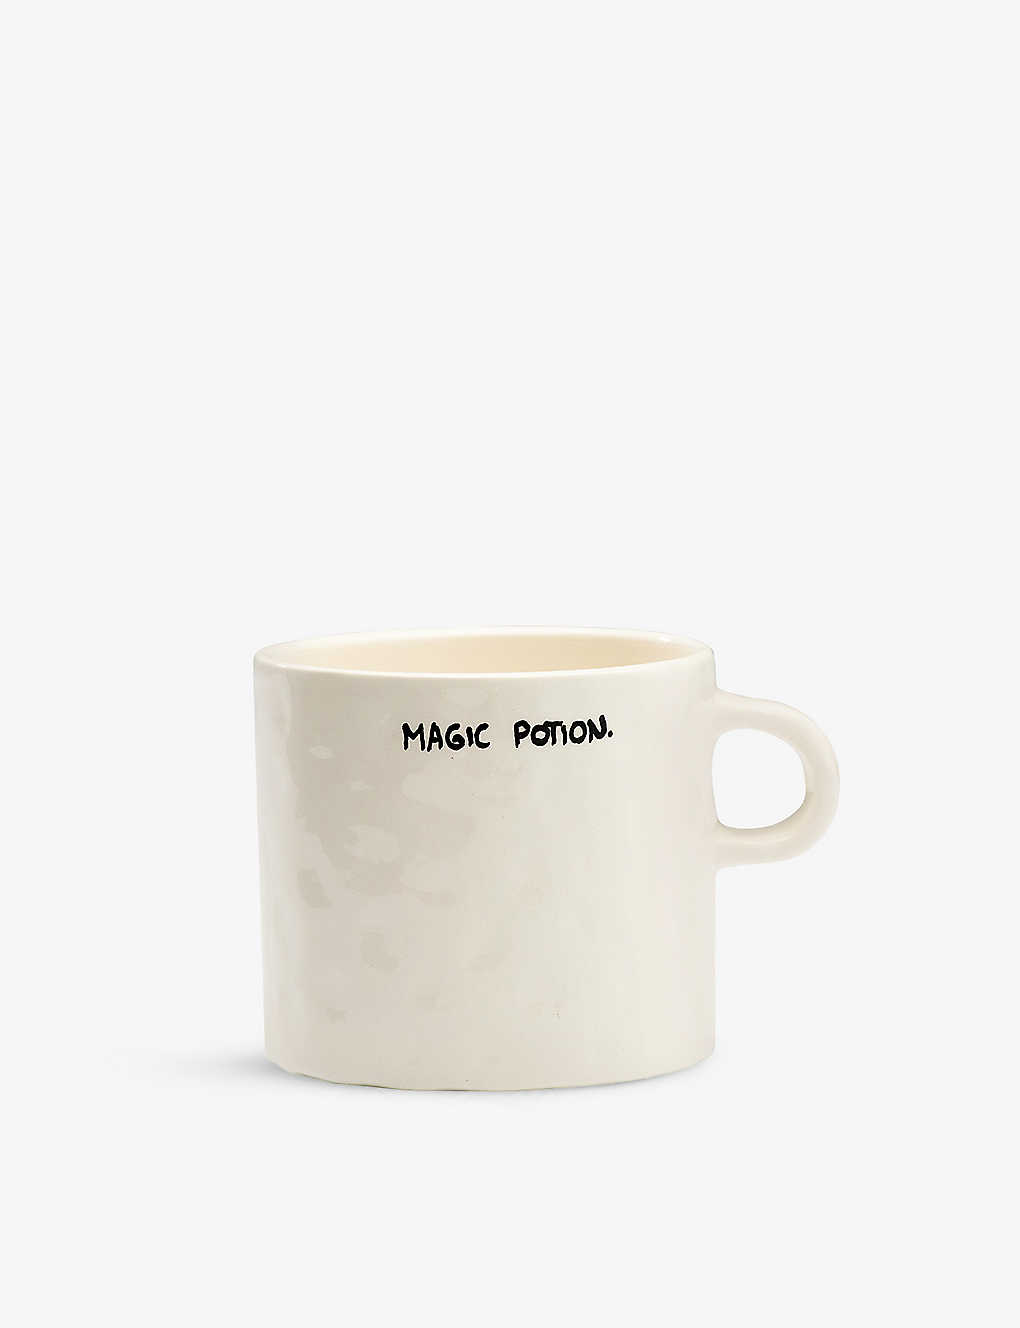 Anna + Nina Magic Potion Ceramic Mug 10.3cm